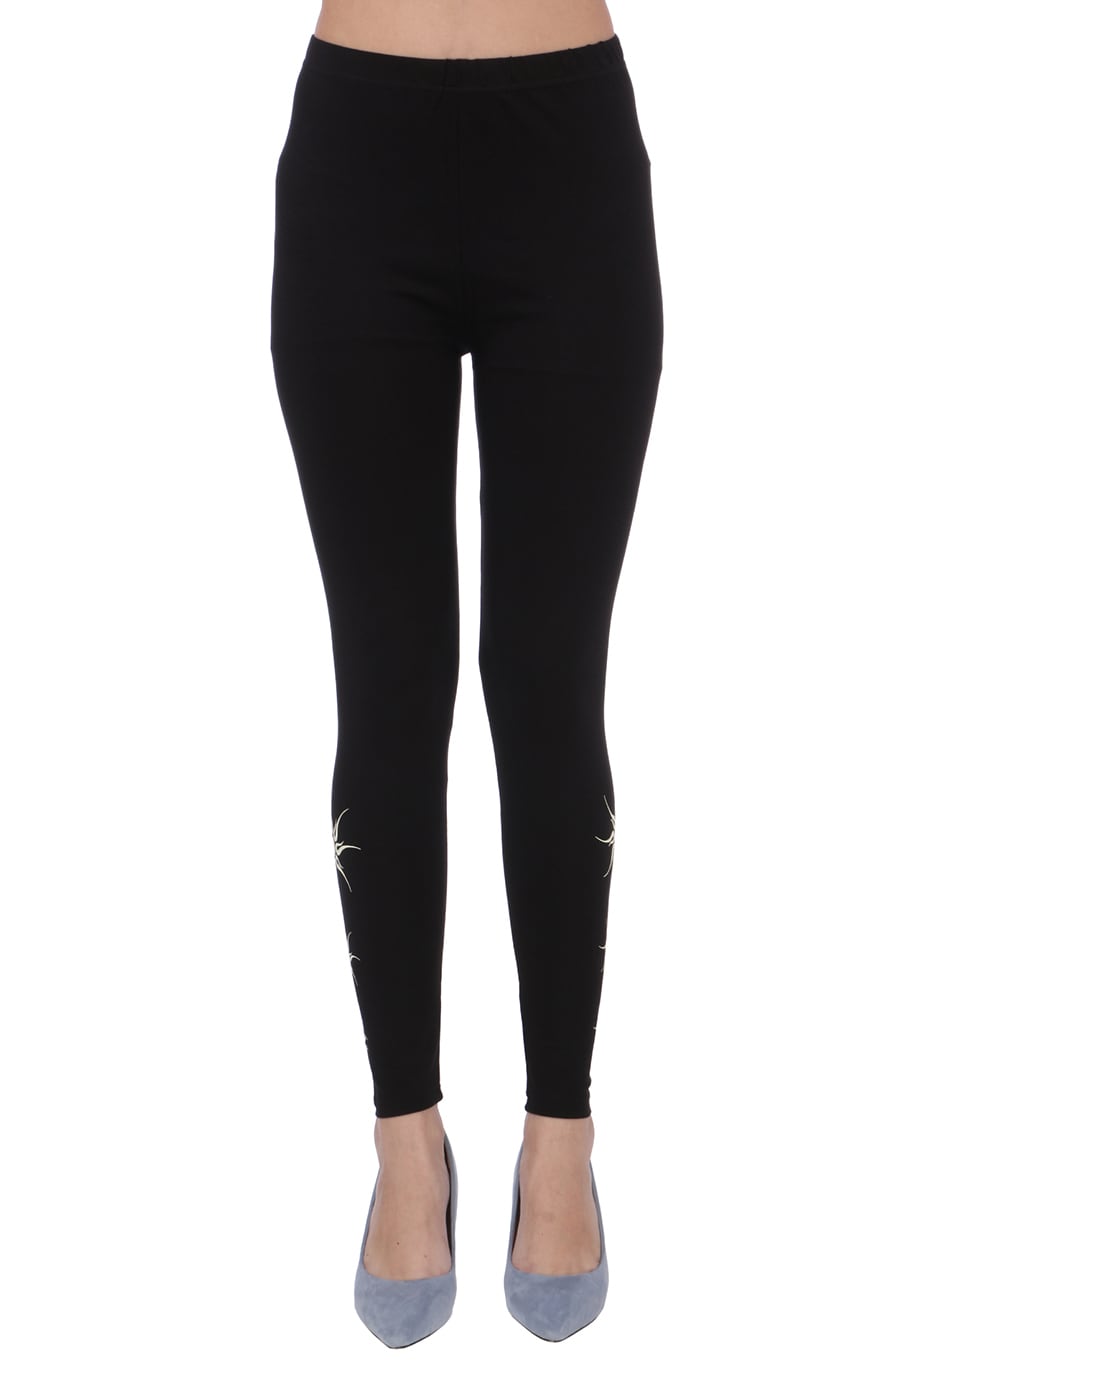 Buy SPIFFY Women Full Length Casual Black Cotton Spandex Legging